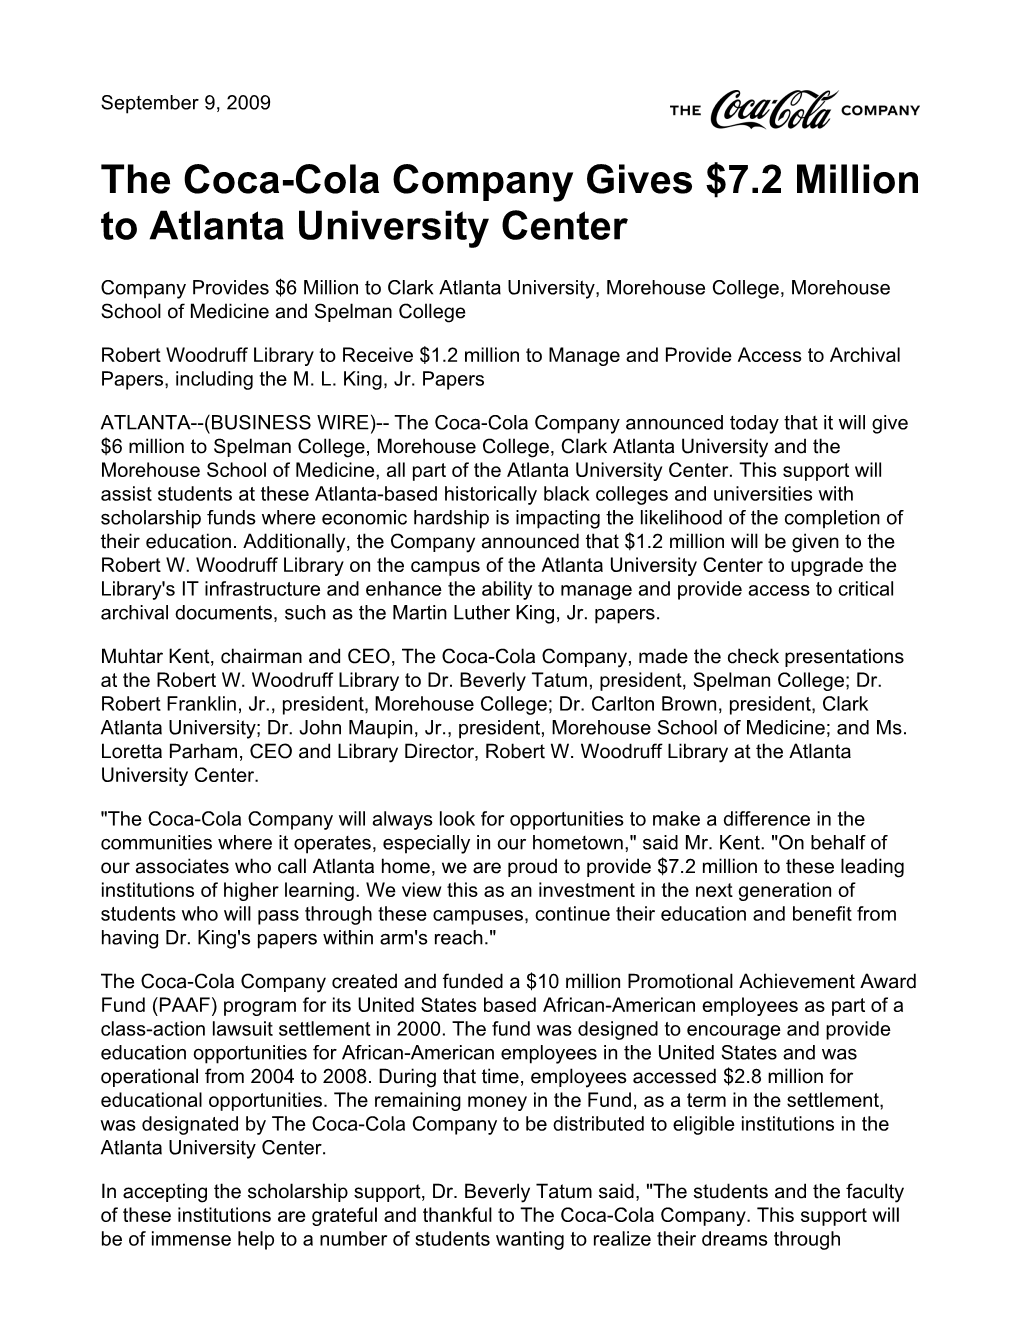 The Coca-Cola Company Gives $7.2 Million to Atlanta University Center